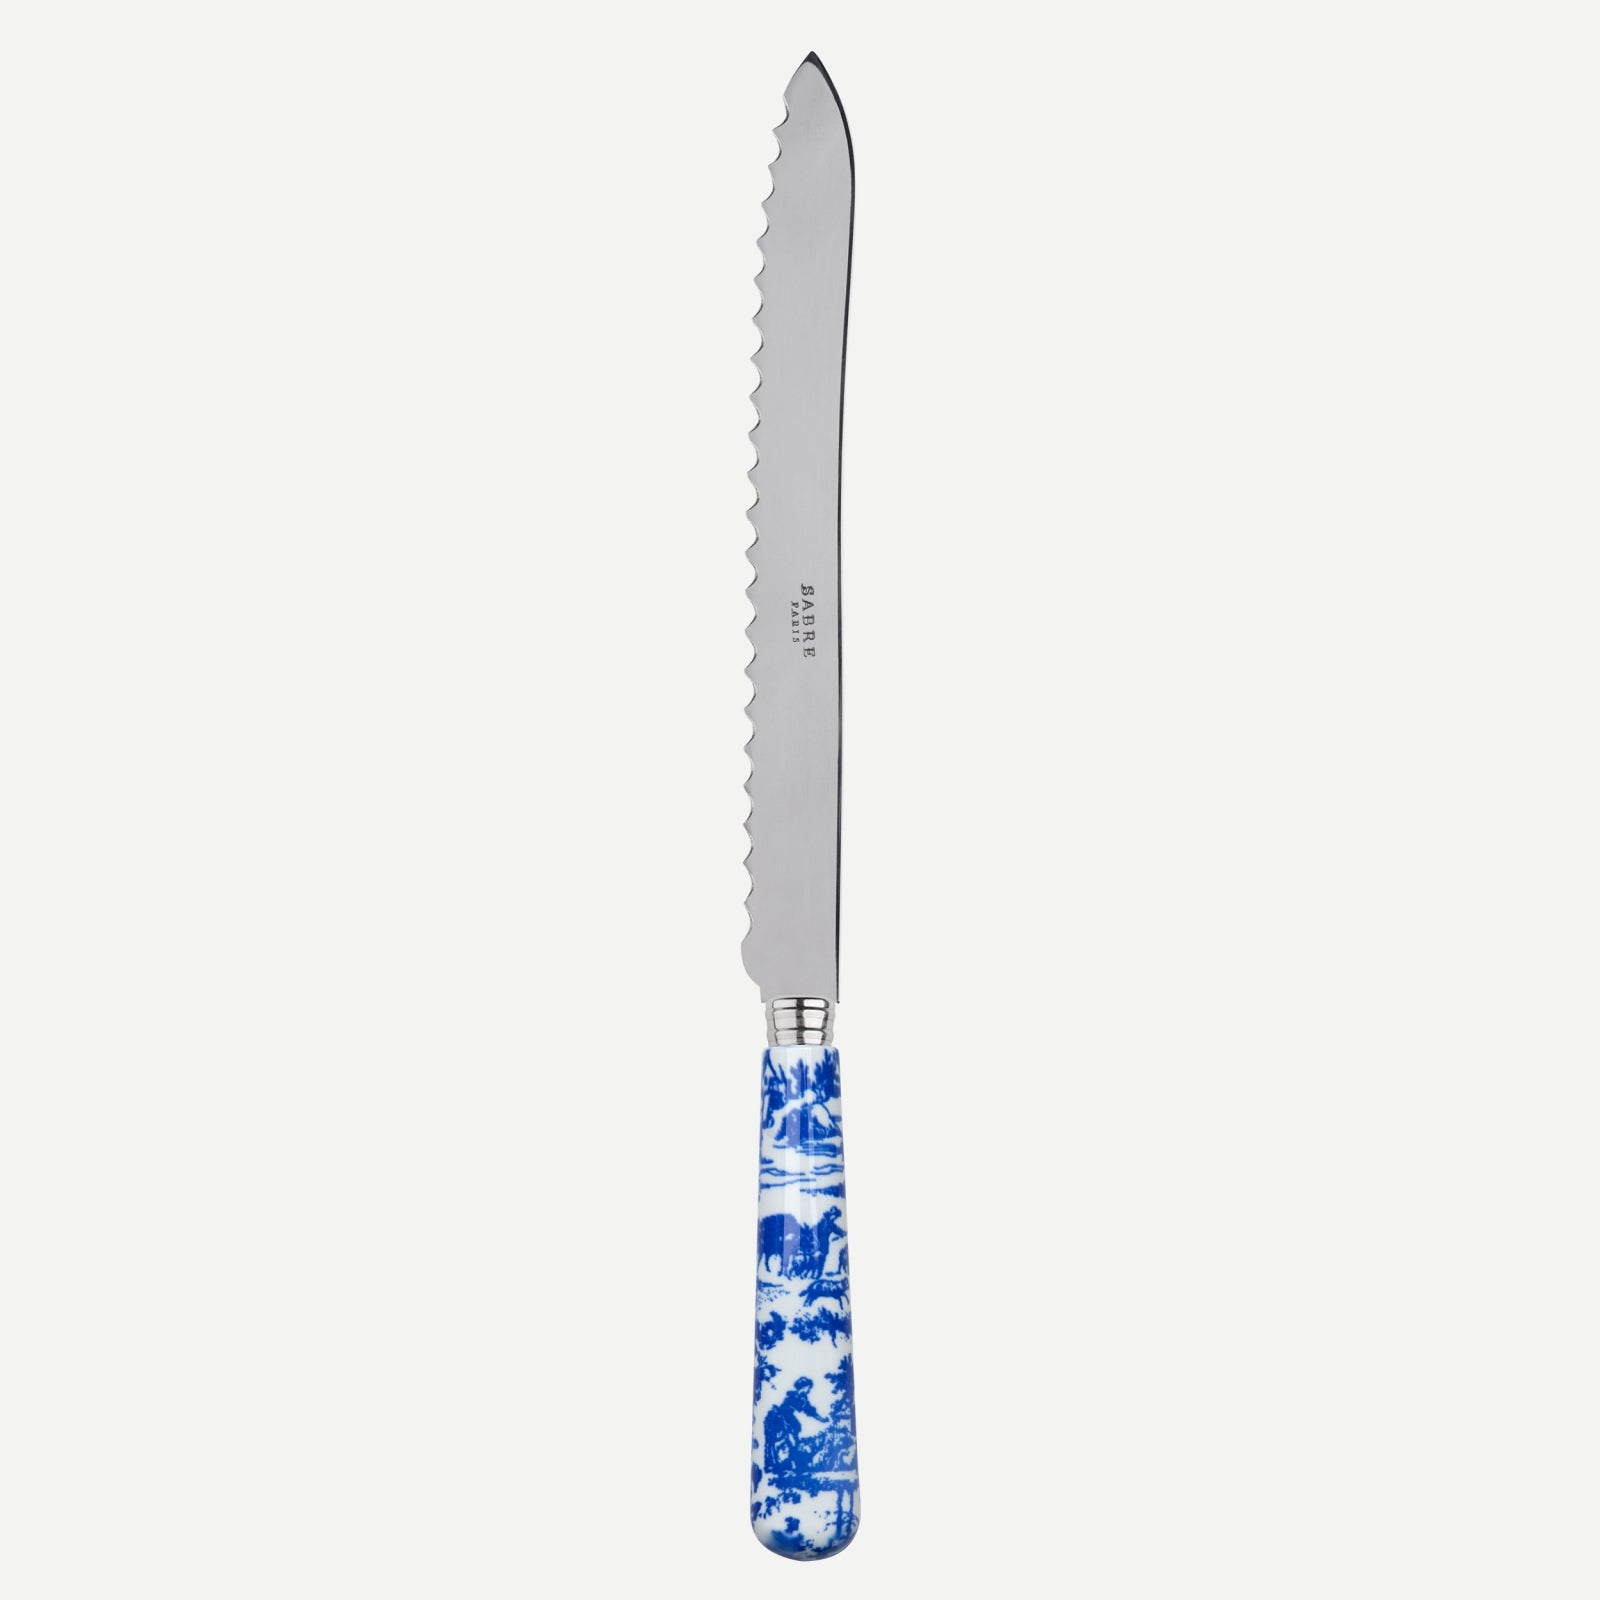 Bread knife - toile de jouy - Blue